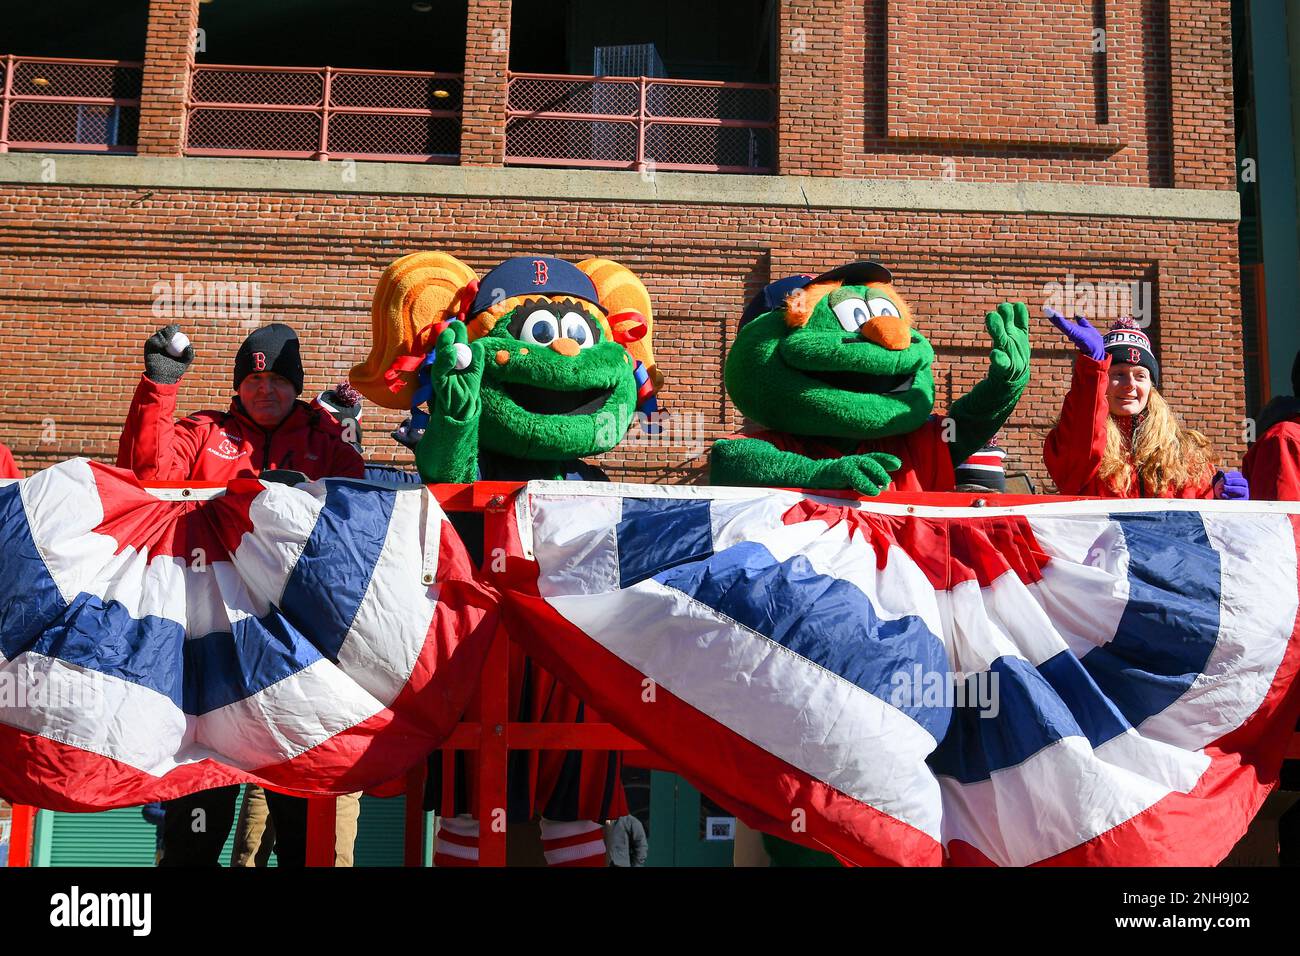 BOSTON, MA - FEBRUARY 03: Boston Red Sox mascots, Wally the Green